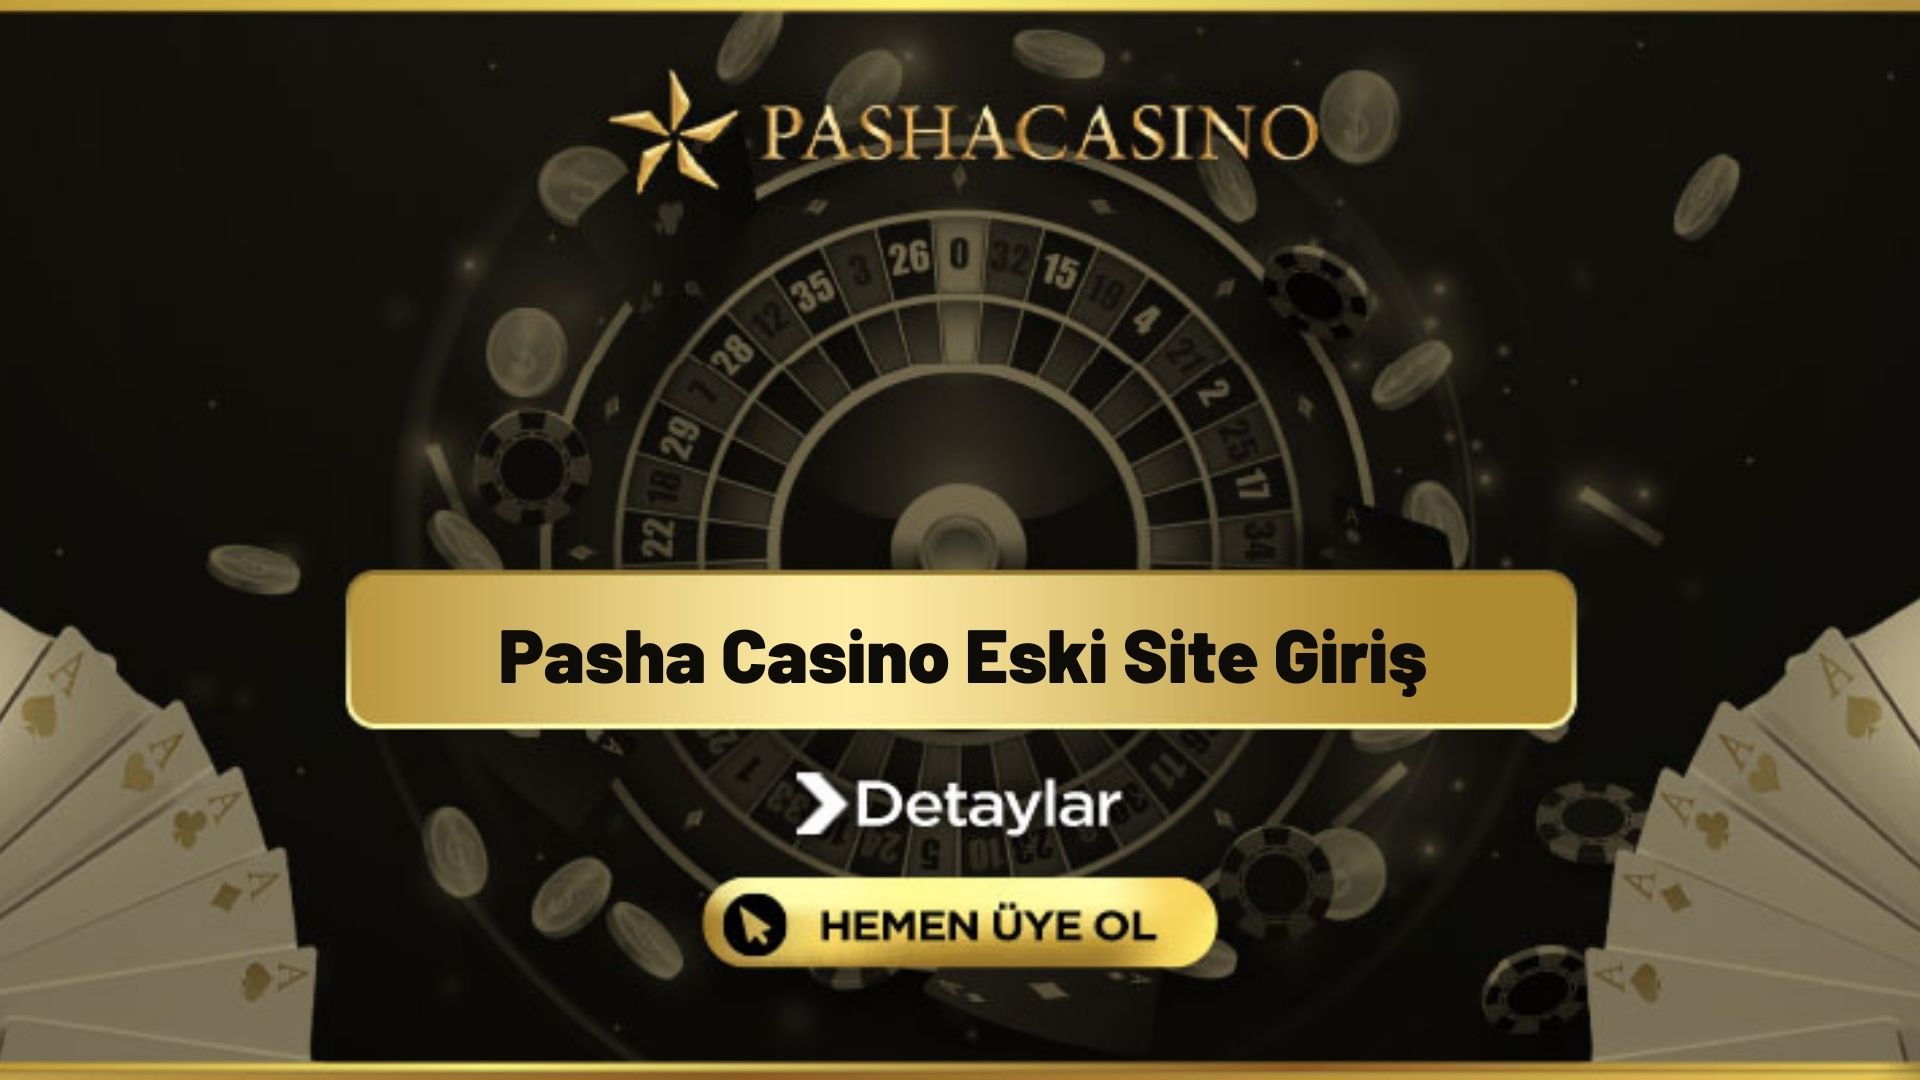 Pasha Casino Eski Site Giriş